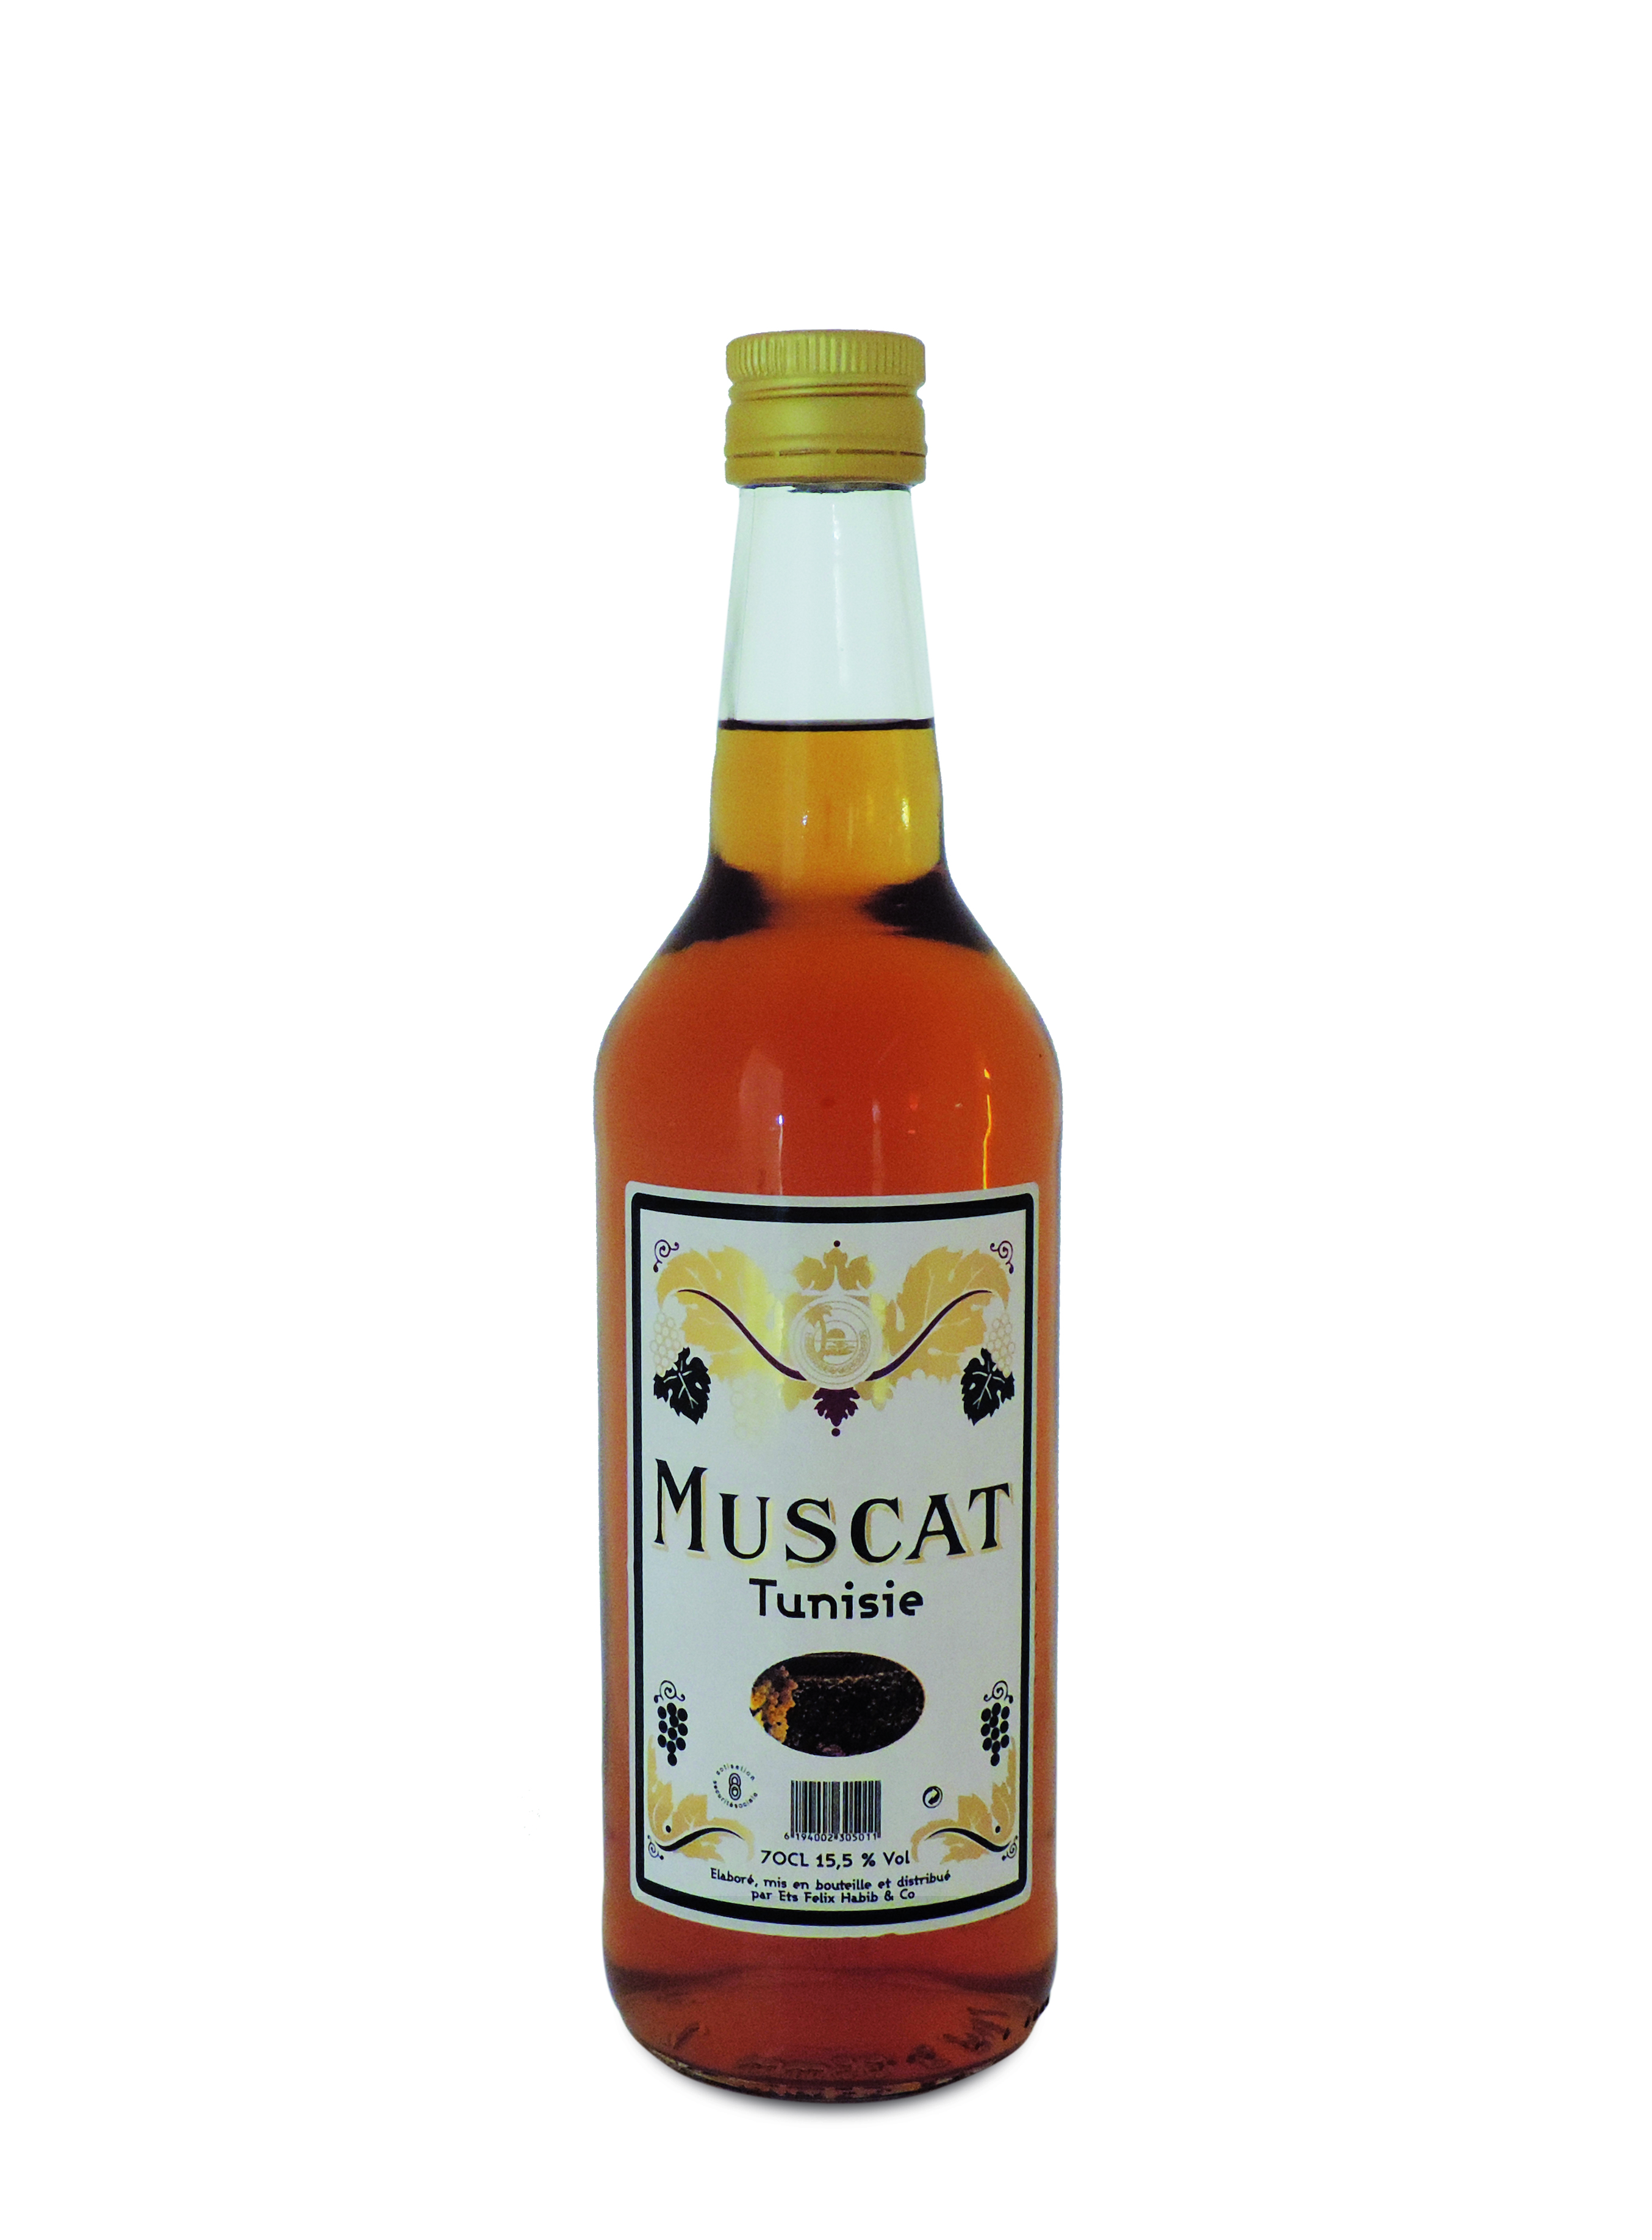 MUSCAT TUNISIE - 70cl 